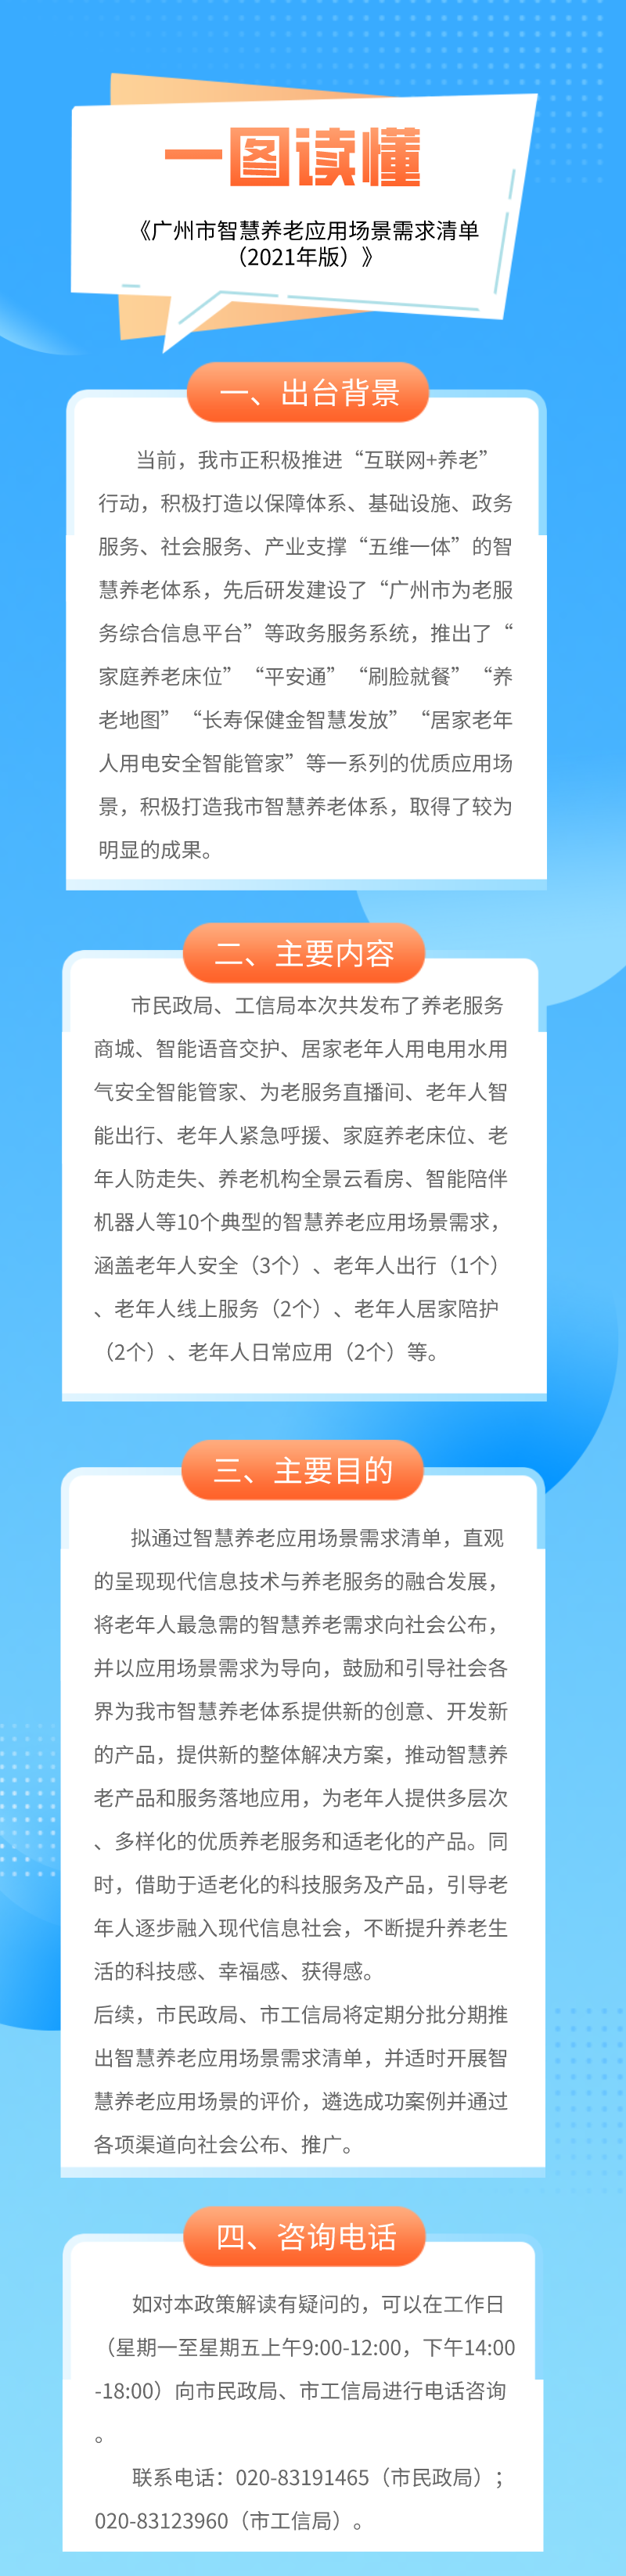 【一图读懂】《广州市智慧养老应用场景需求清单（2021年版）》.png